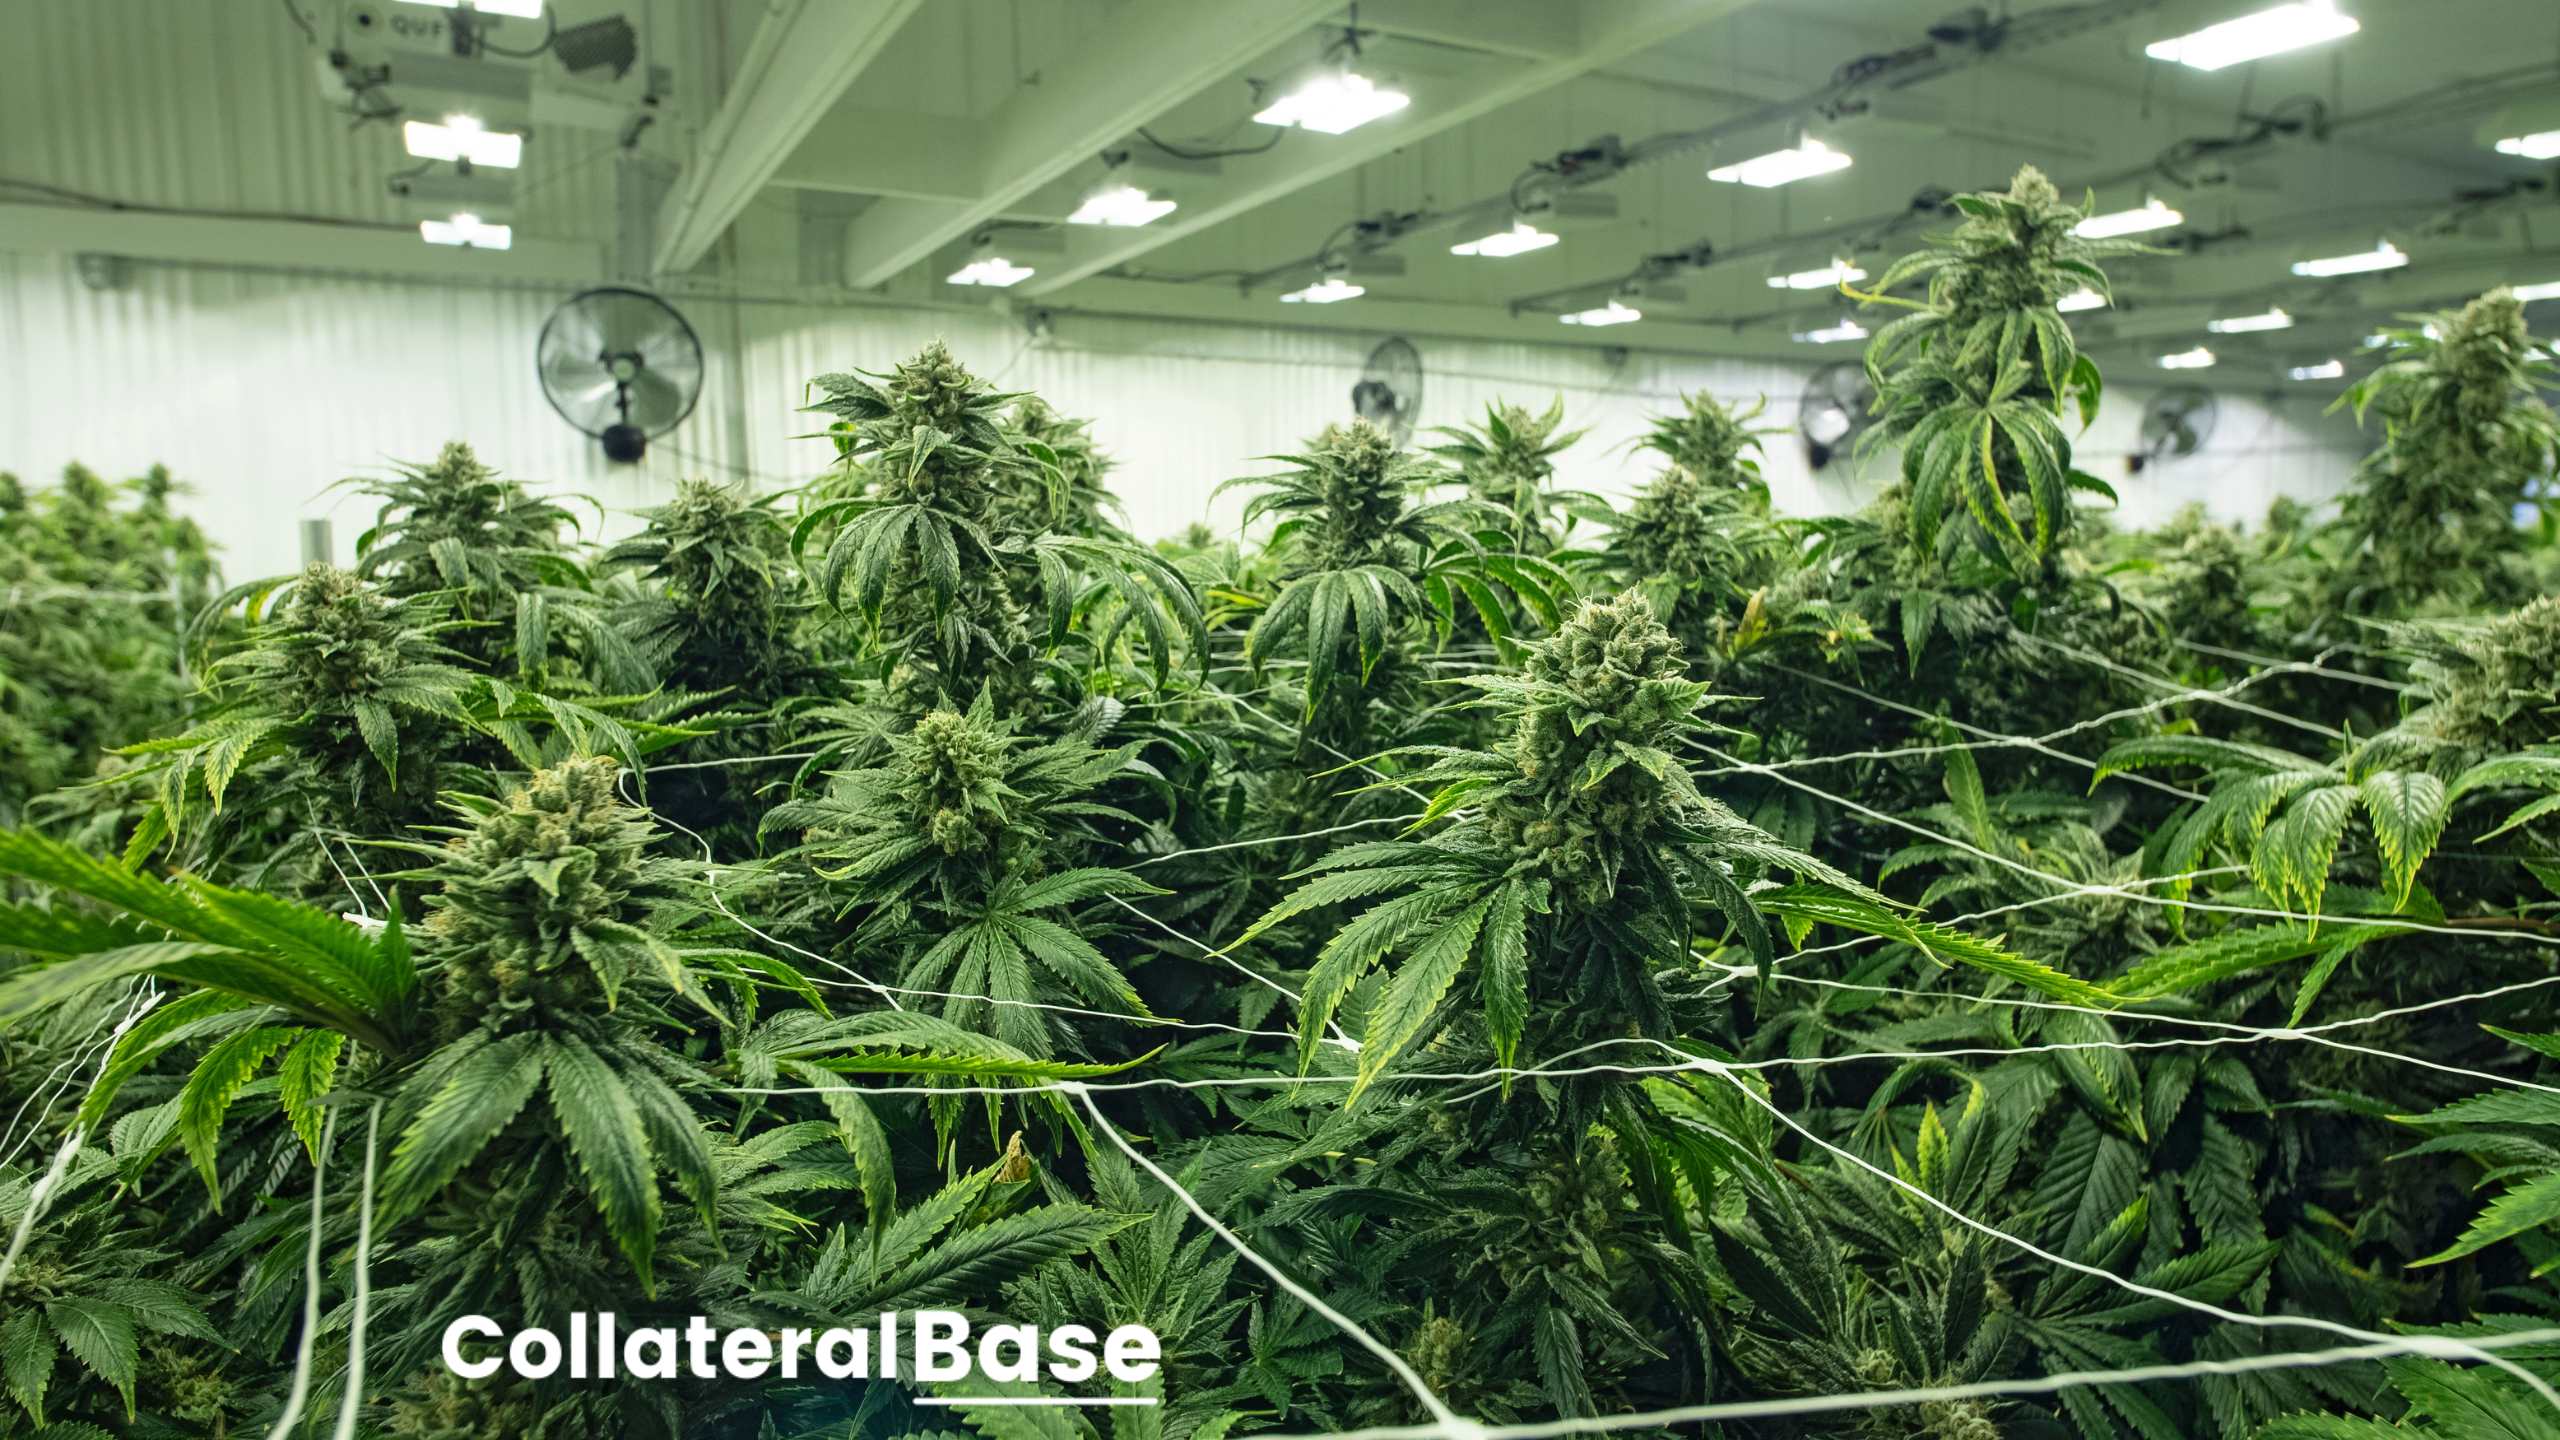 Burlington utility offers efficient, indoor cannabis-growing tips